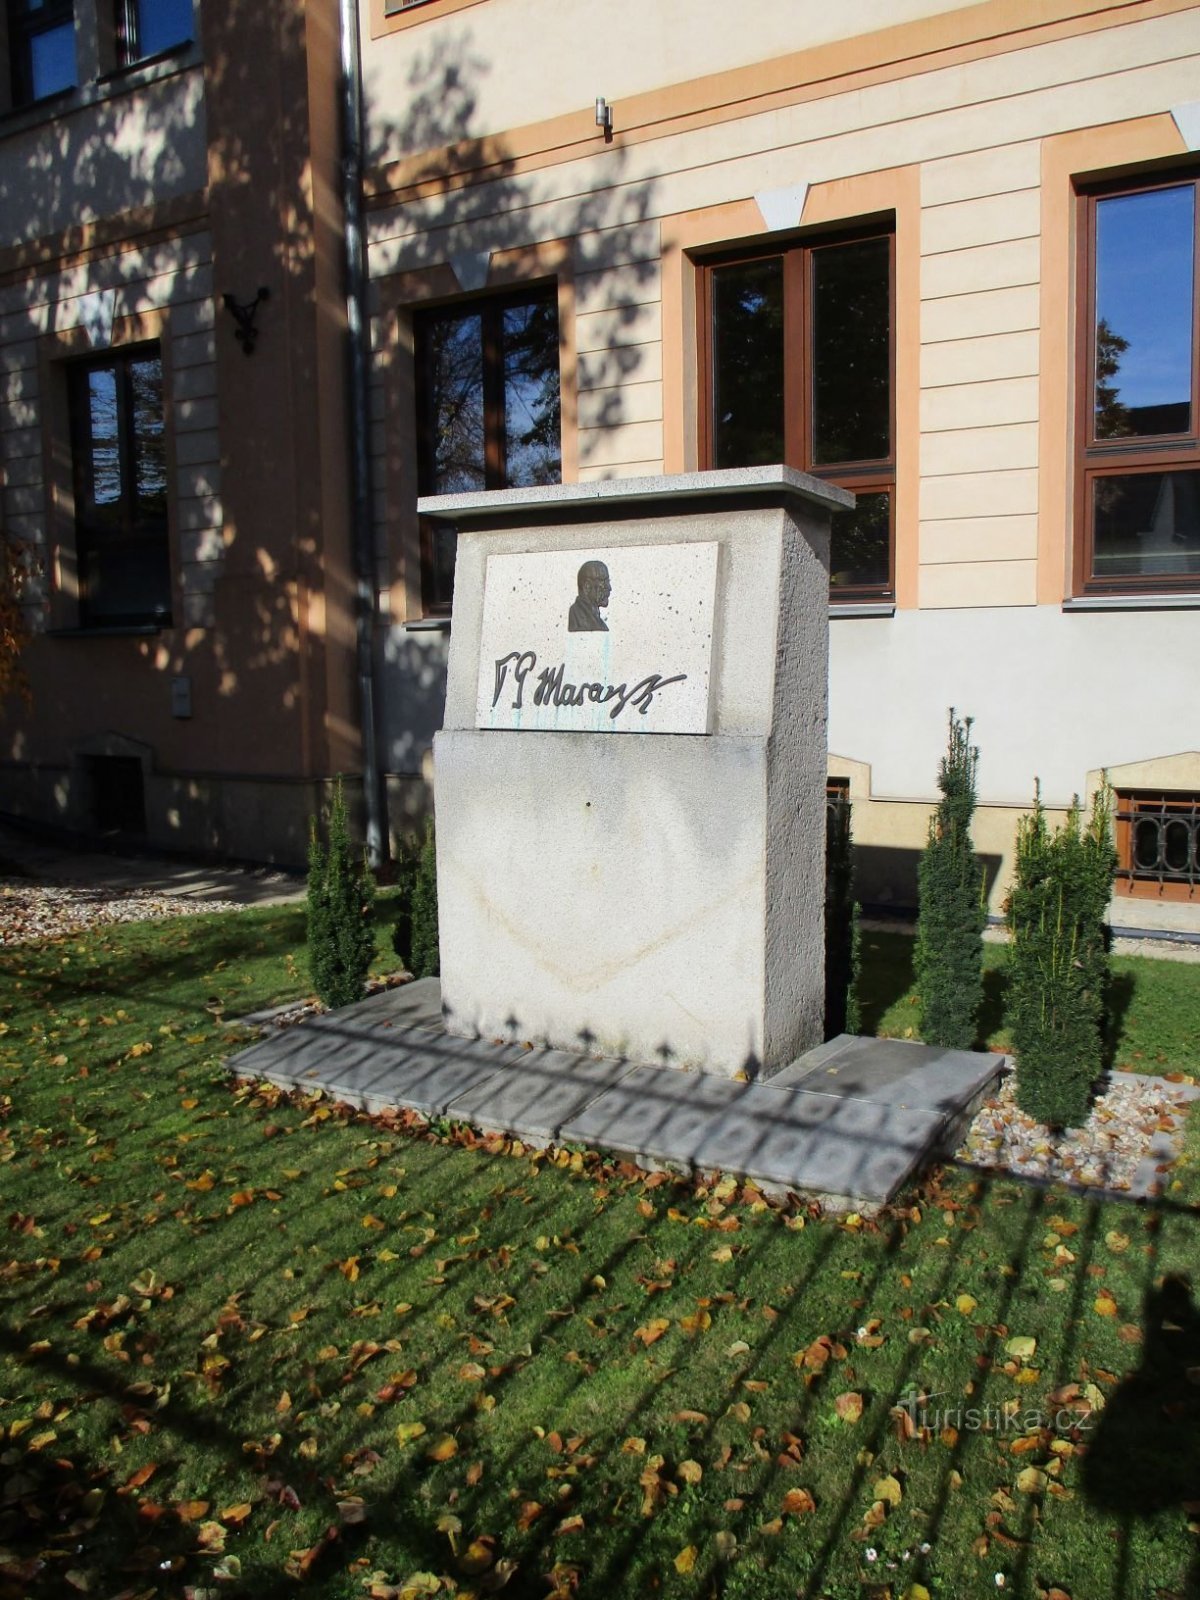 Liberation monument in front of primary school in Úprková street (Hradec Králové, 28.10.2020/XNUMX/XNUMX)